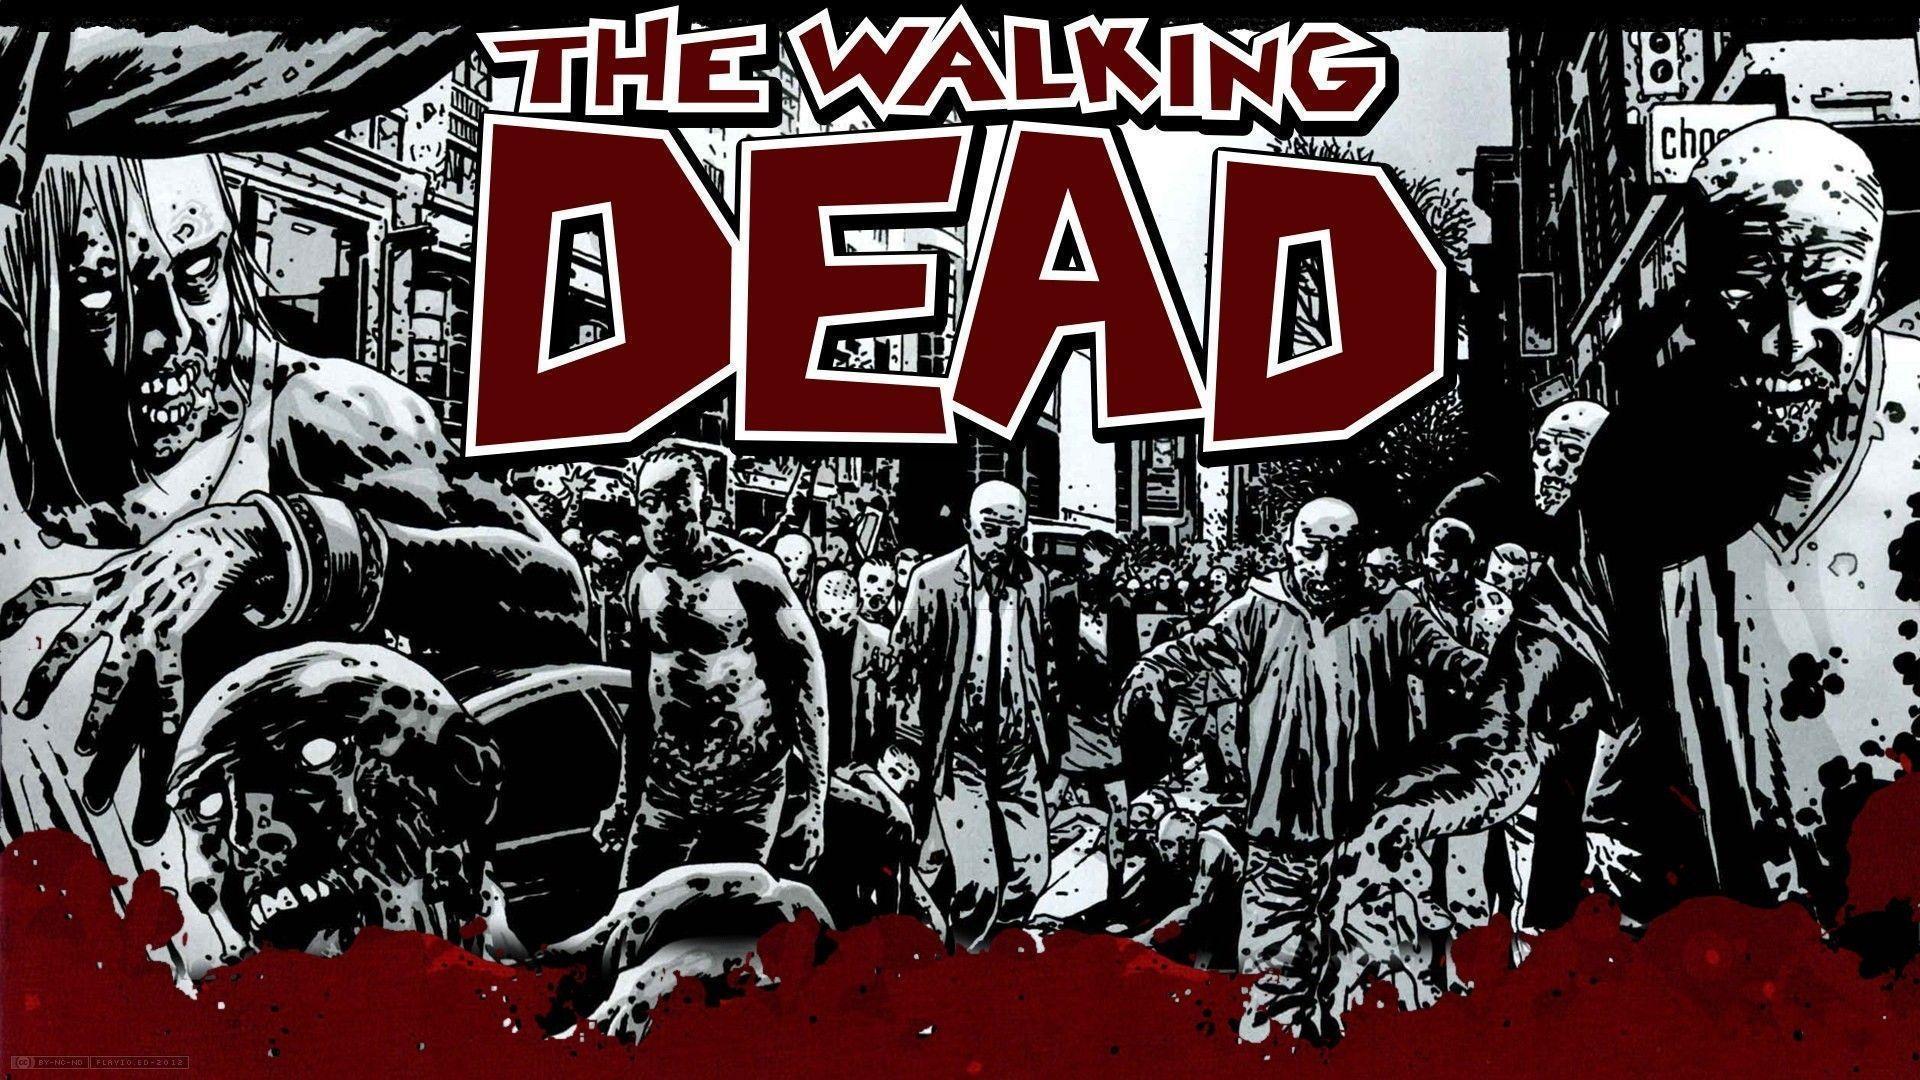 Walking Dead Wallpaper Free Download Wallpaper